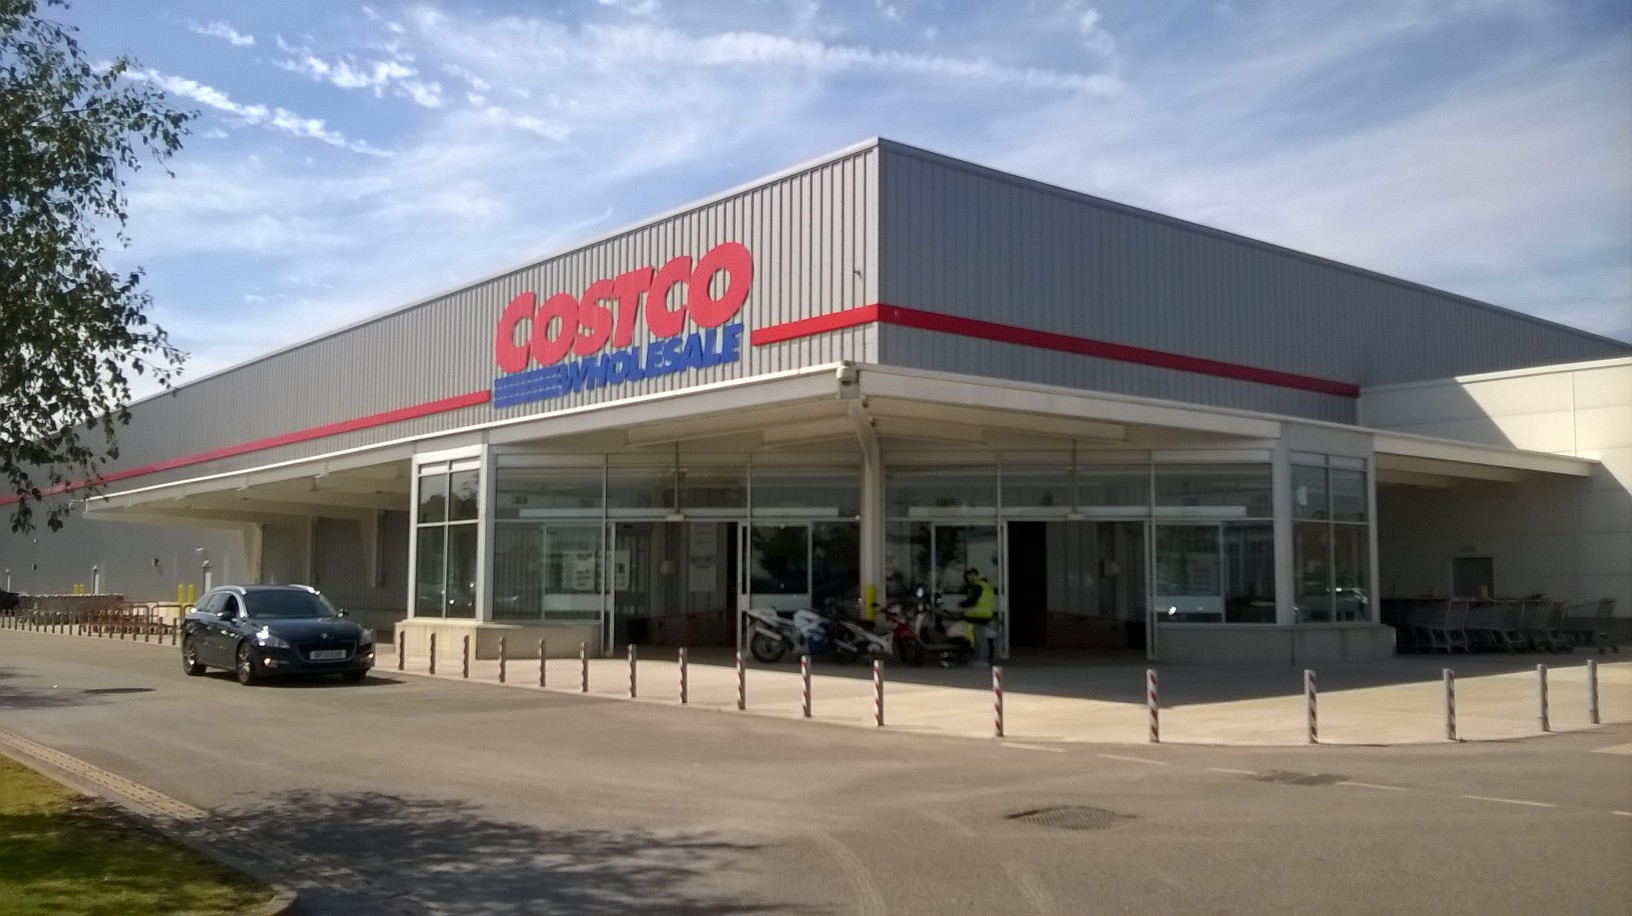 costco-warehouse